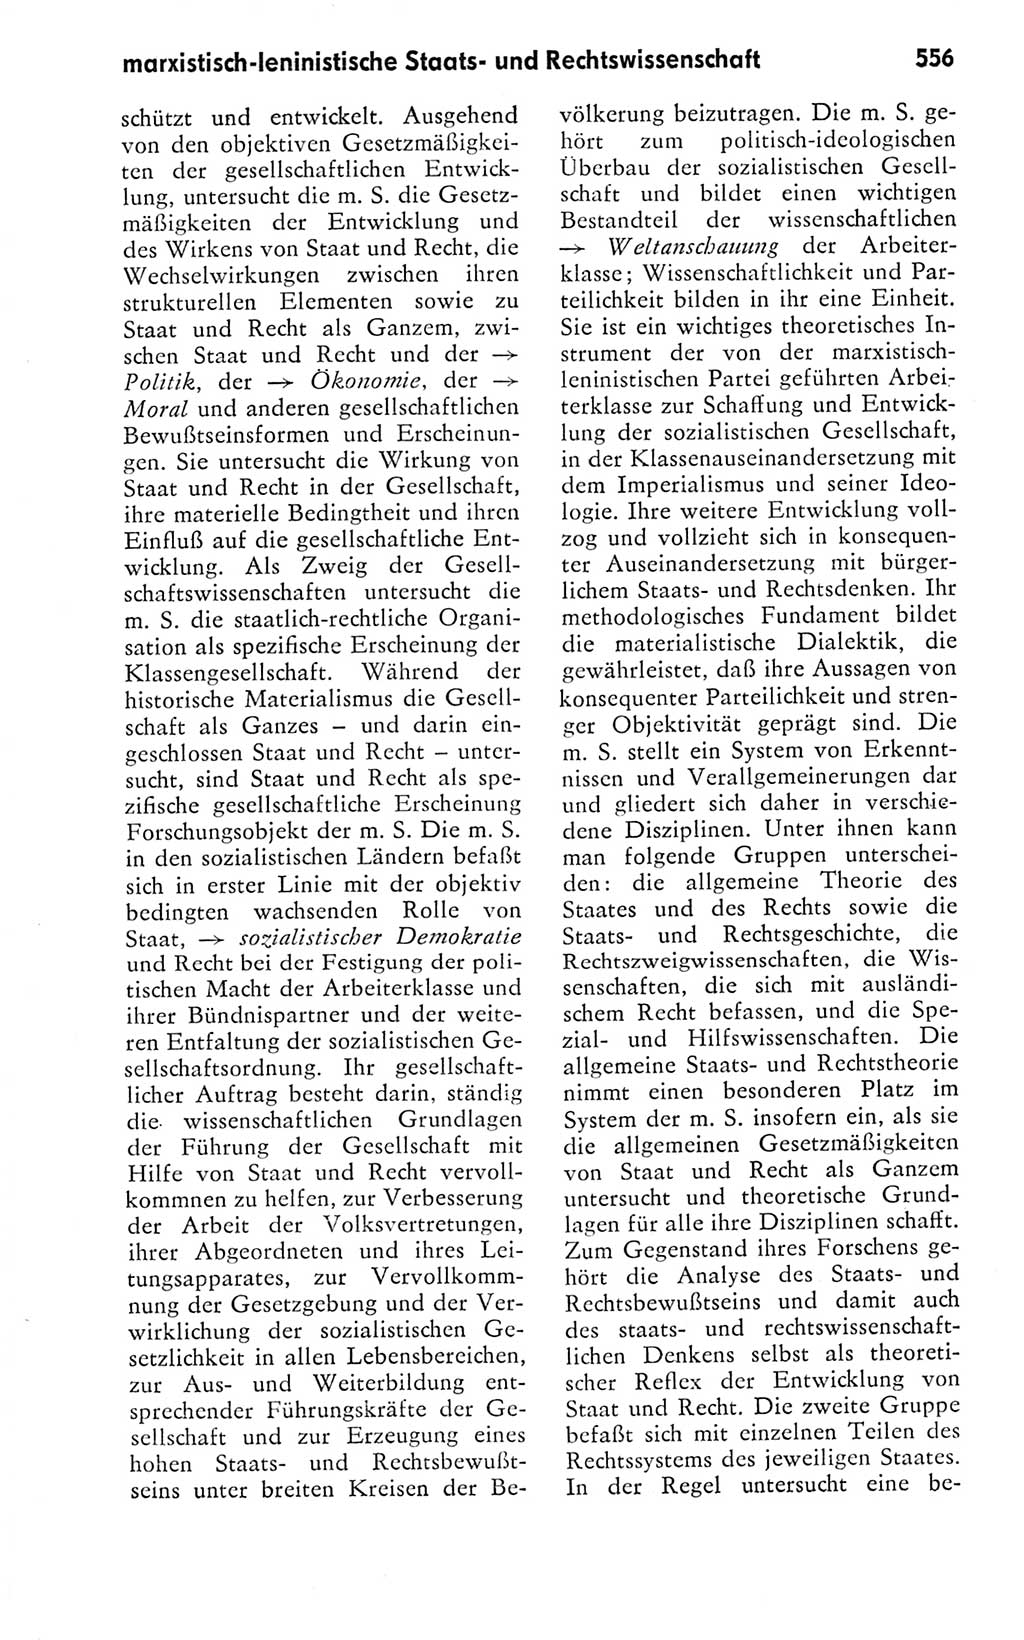 Kleines politisches Wörterbuch [Deutsche Demokratische Republik (DDR)] 1978, Seite 556 (Kl. pol. Wb. DDR 1978, S. 556)